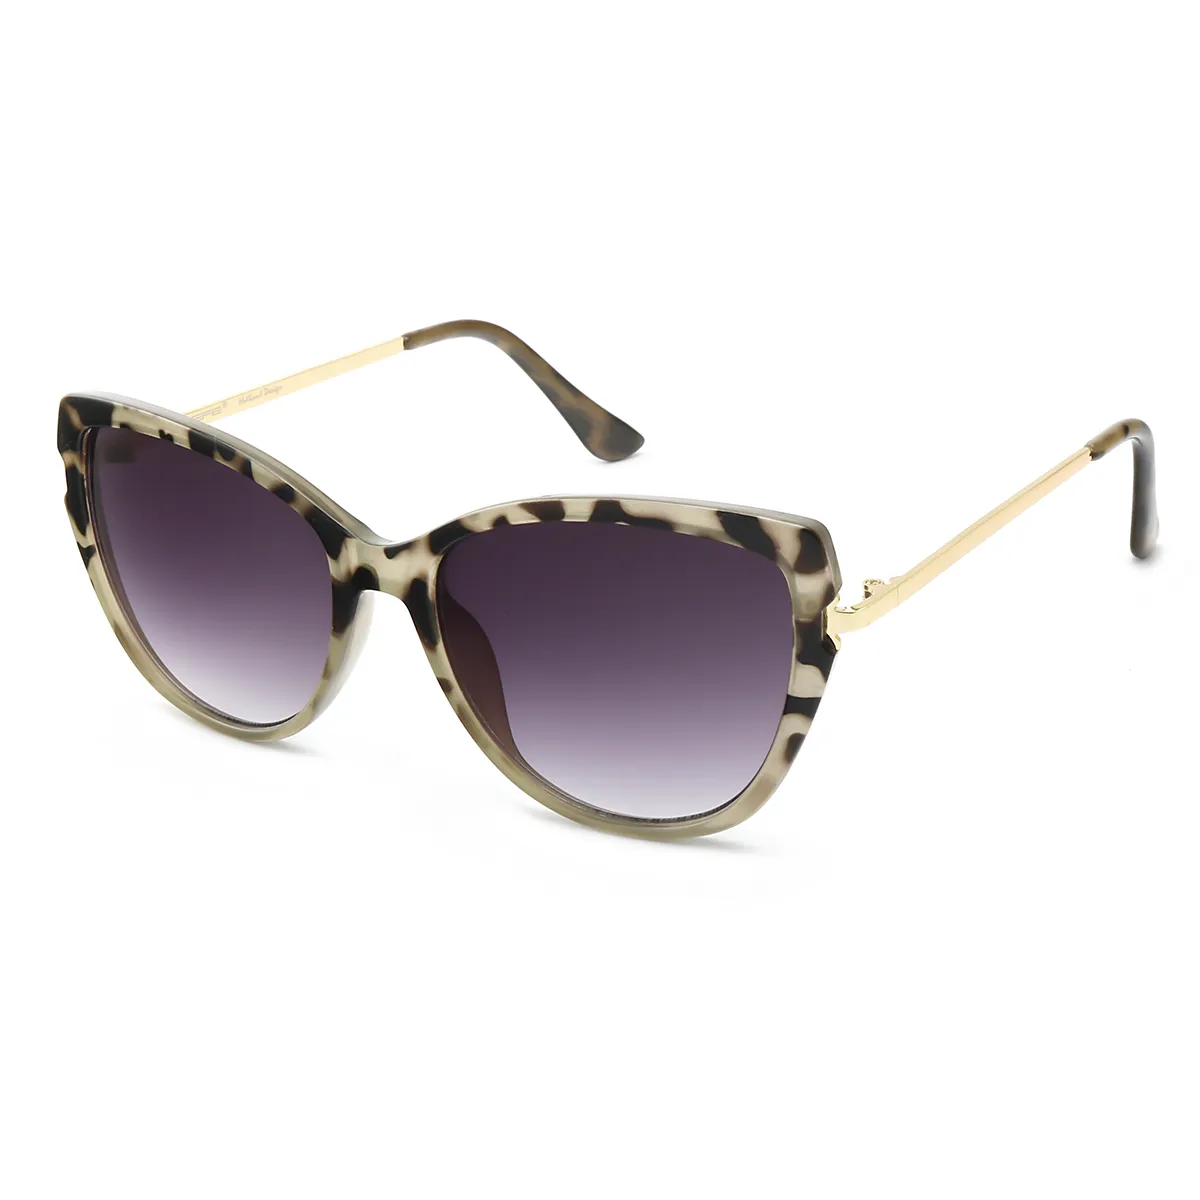 Minnie - Cat-eye Tortoiseshell Sunglasses for Women